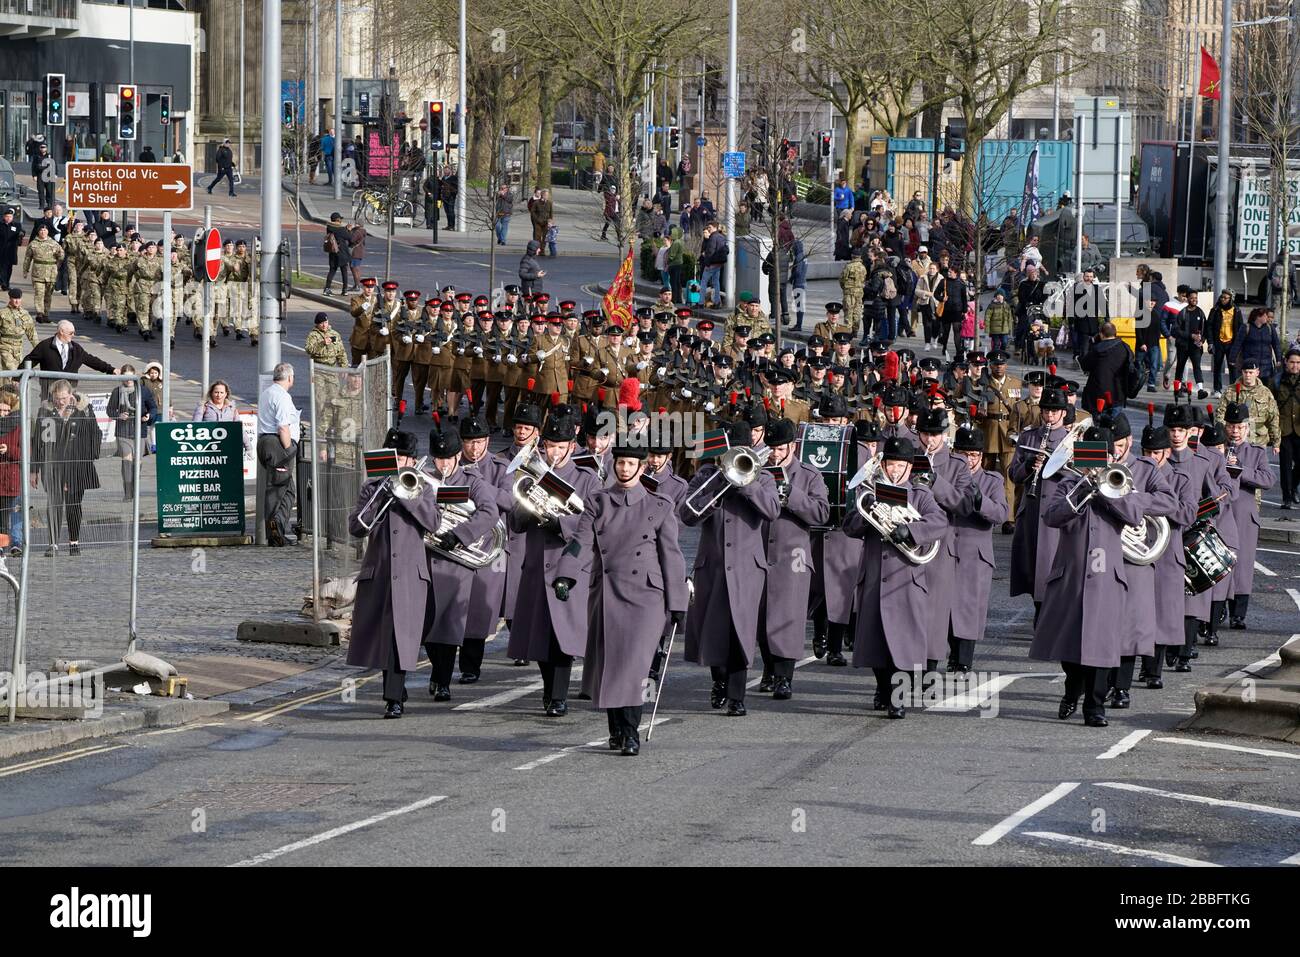 Los miembros del Regimiento Signal 39 marchan por el centro de Bristol durante un Desfile de la Libertad de la Ciudad el sábado 22 de febrero de 2020. Foto de stock